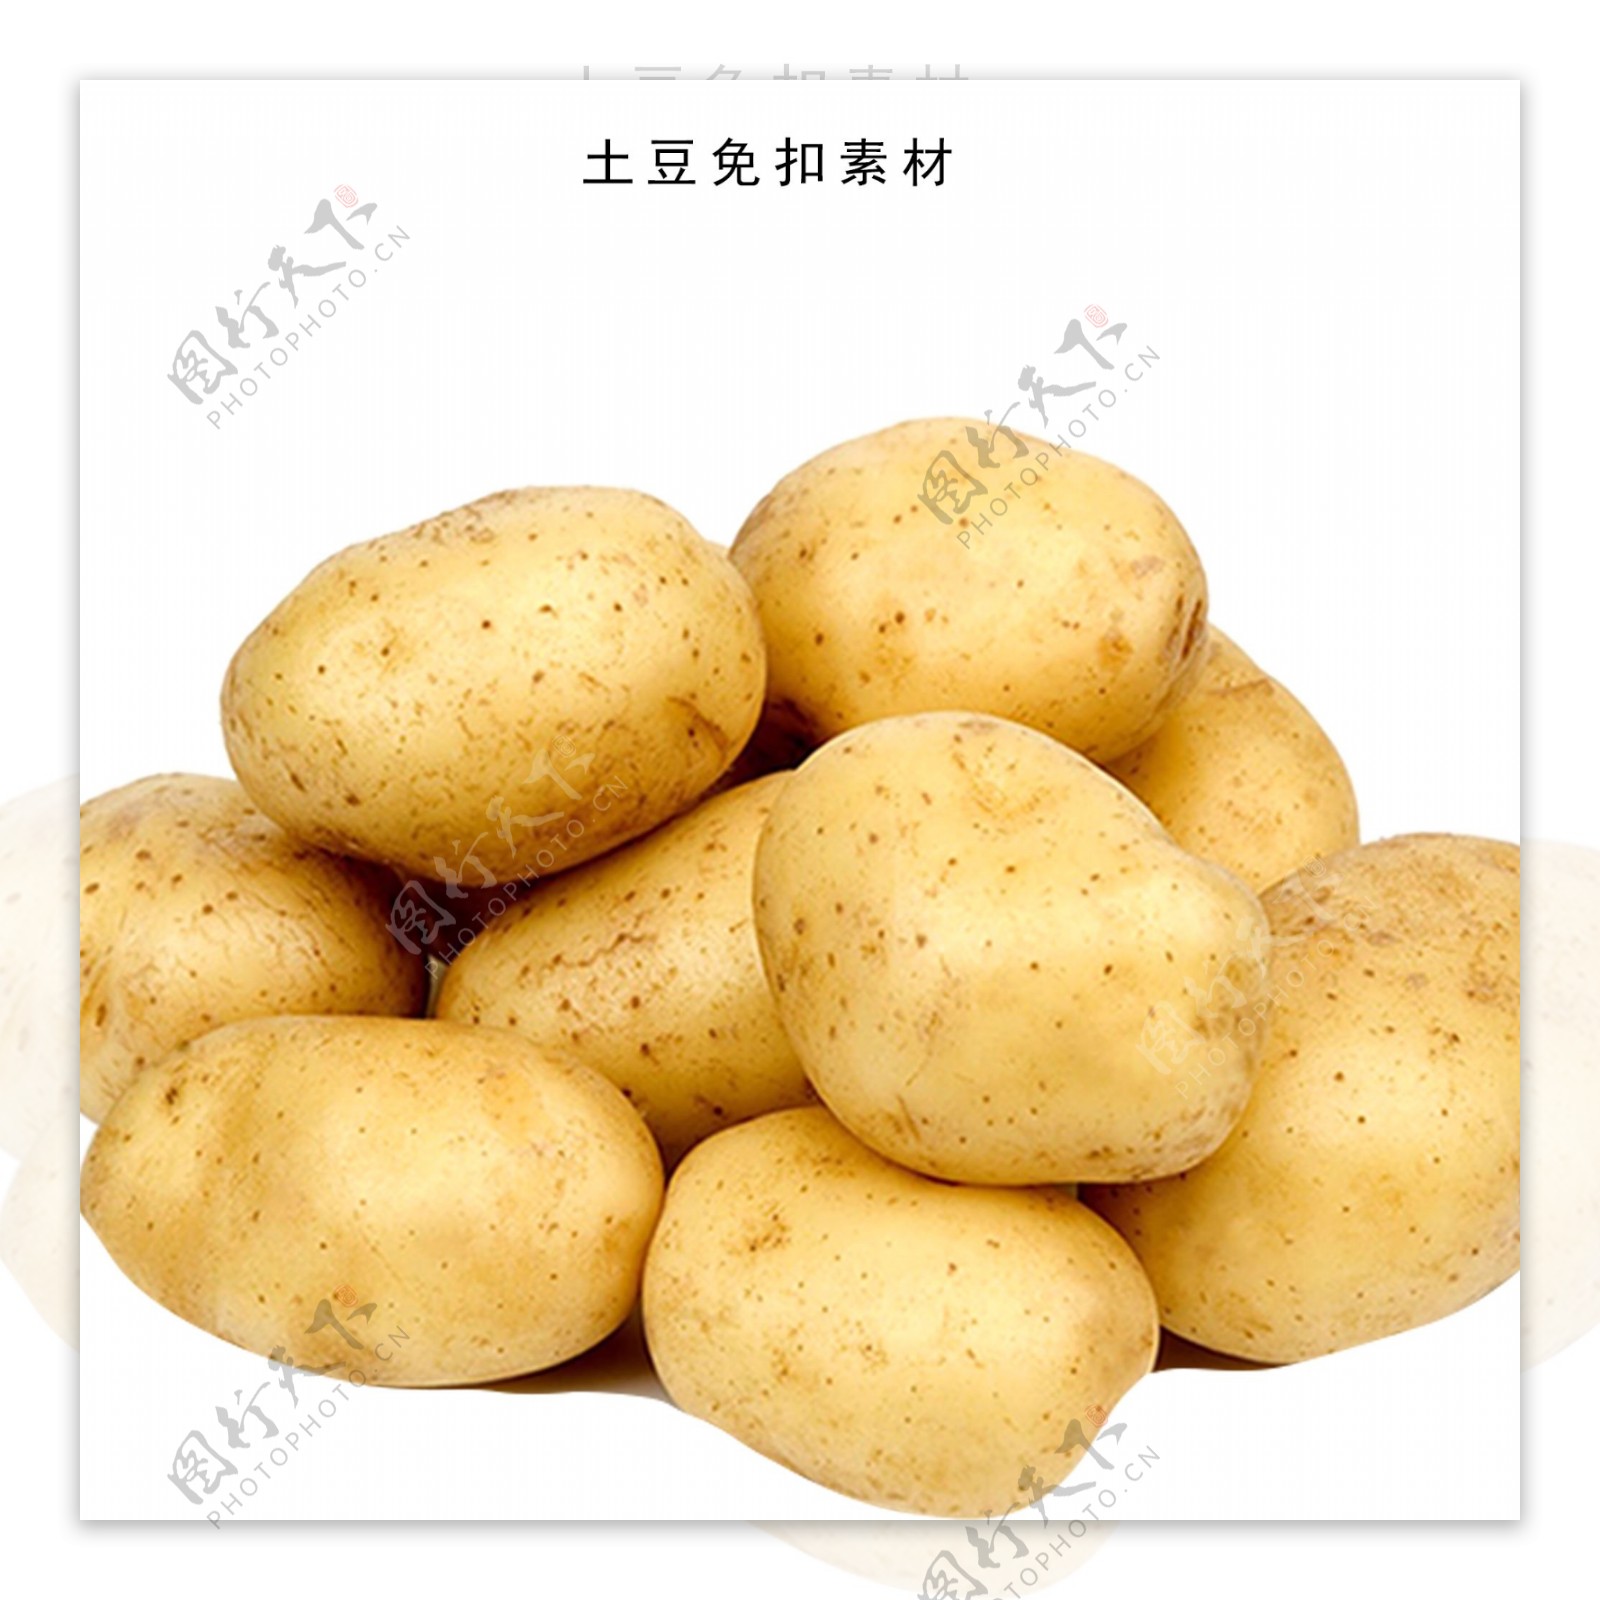 土豆素材农产品